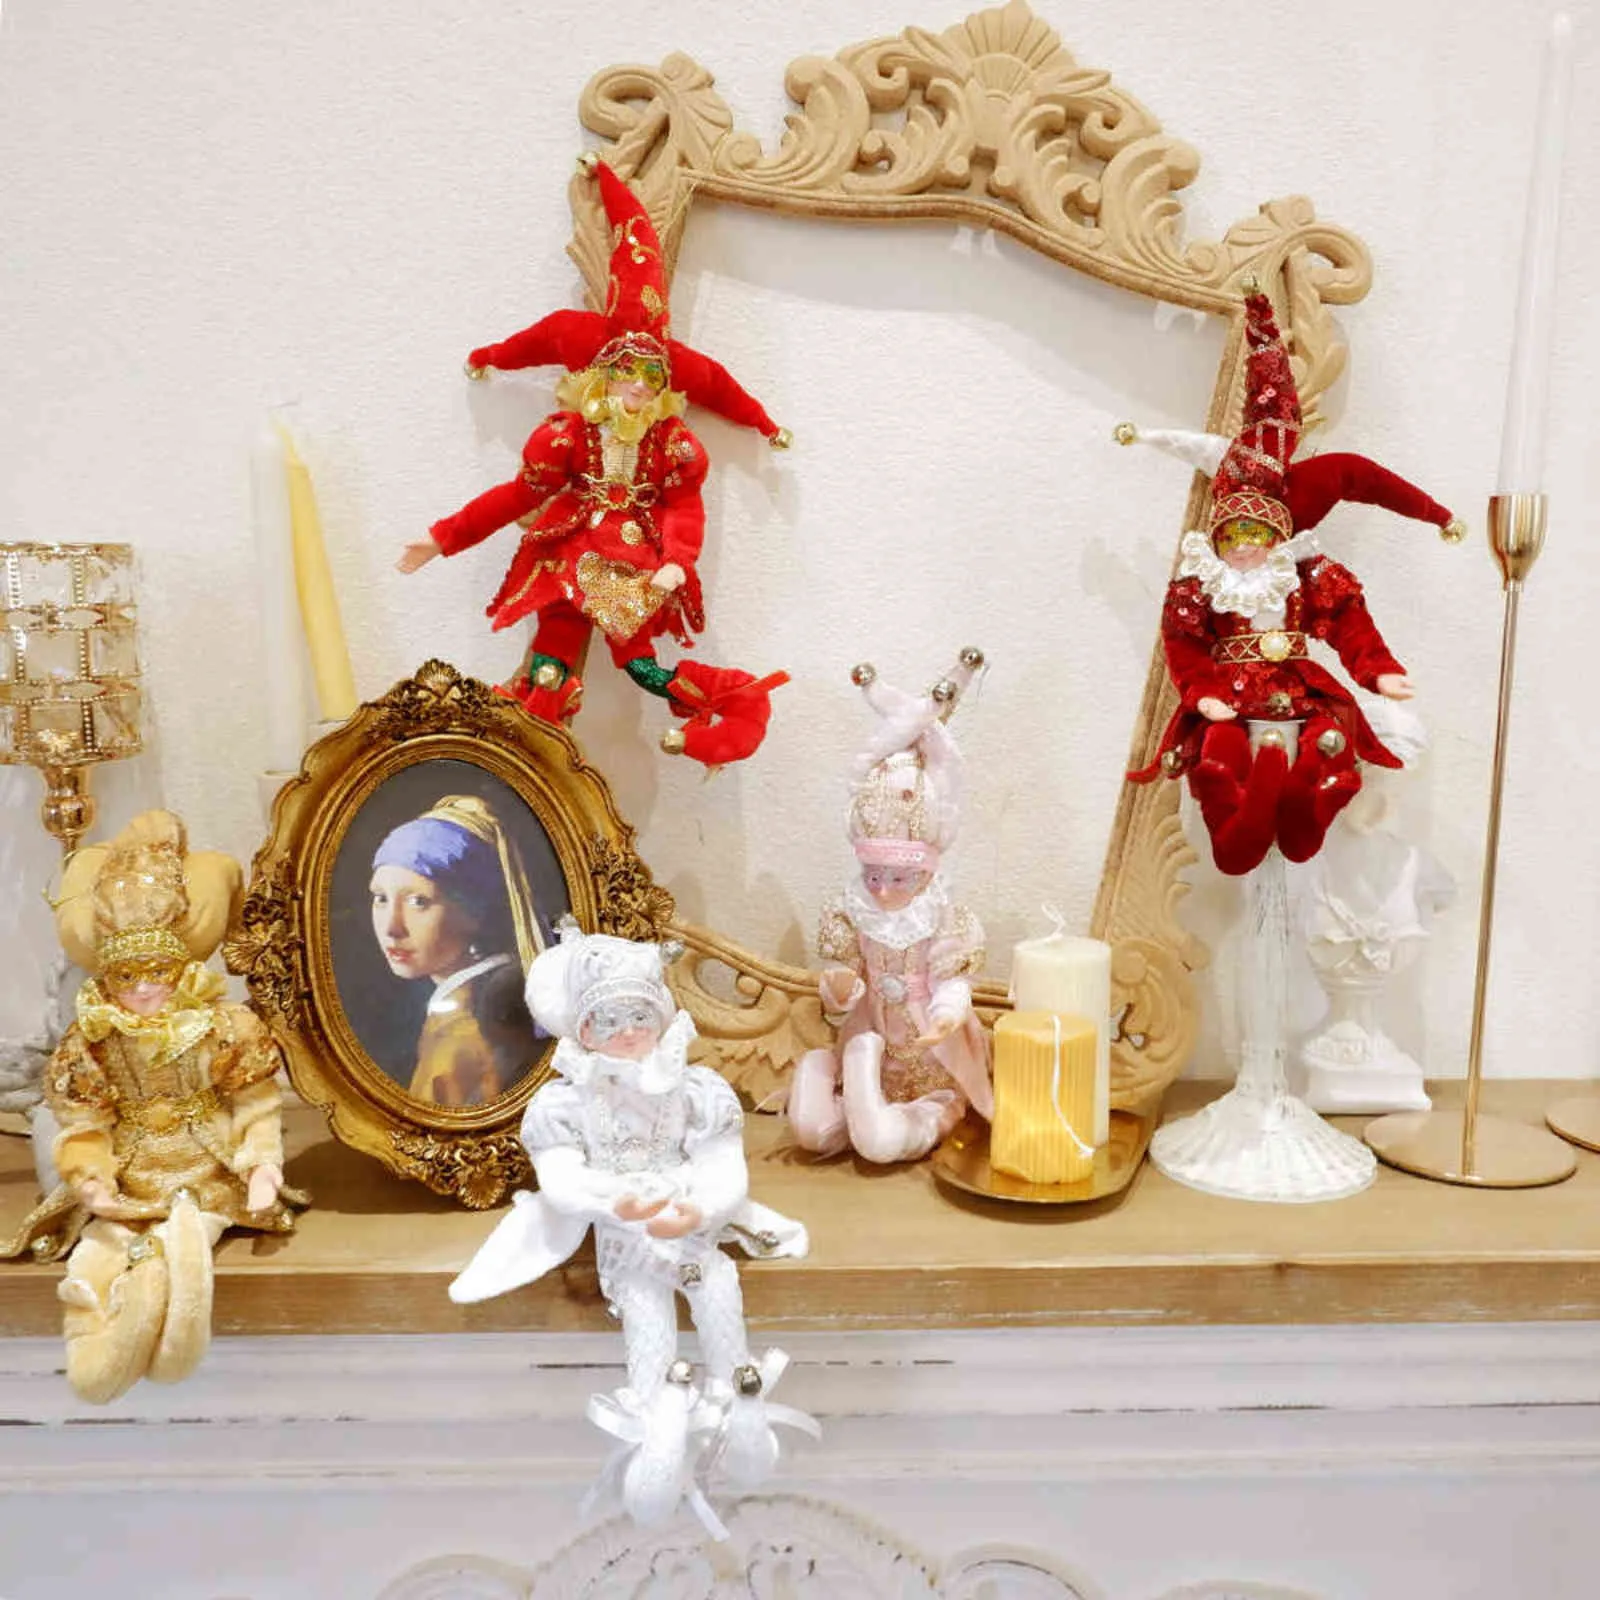 ABXMAS Weihnachtsdekoration, handgefertigt, hängende sitzende Elfe, Plüschtier, Weihnachtsbaum, hängende Verzierung, Weihnachtsgeschenke, Jahresdekoration 211122